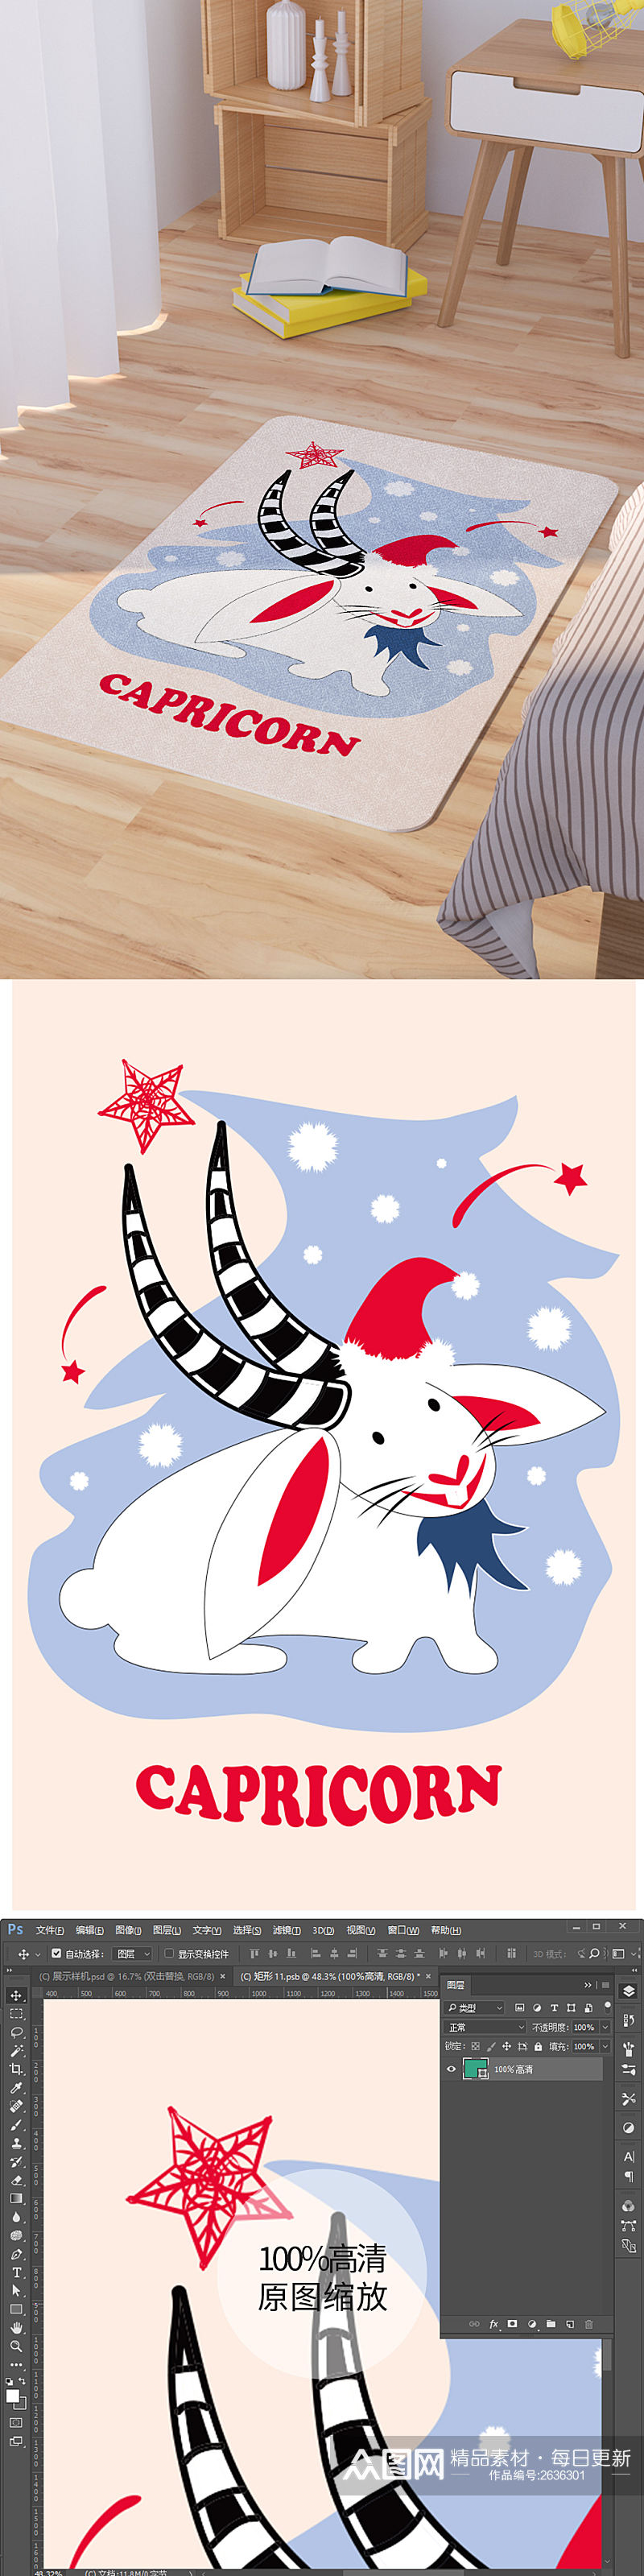 矢量手绘卡通可爱兔子脚垫地毯图案素材